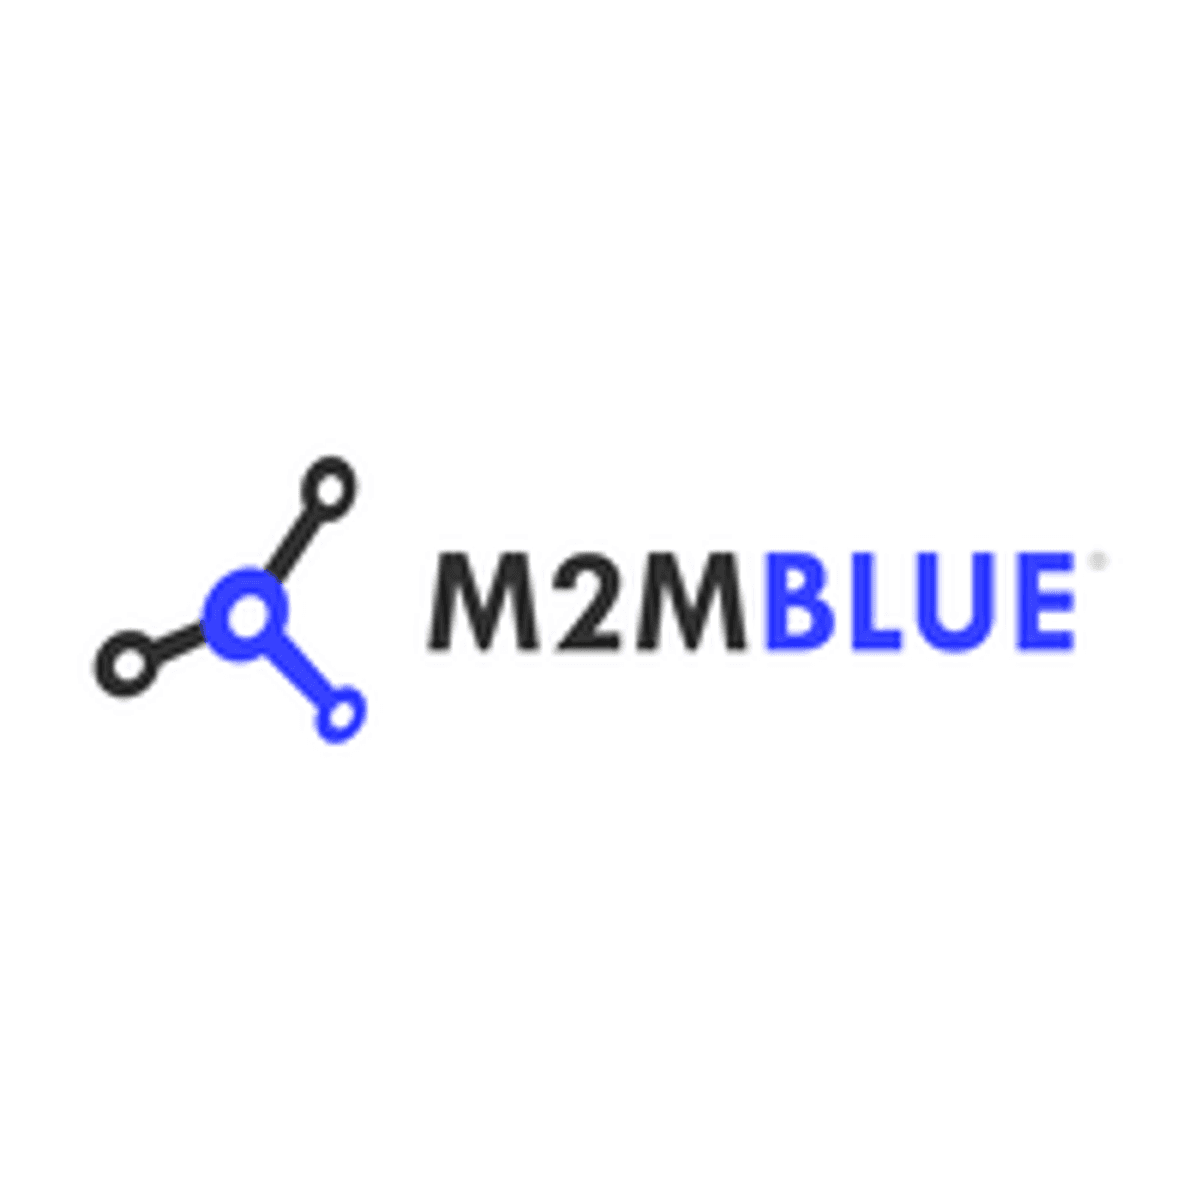 M2MBlue is overgenomen door Wireless Logic Group image